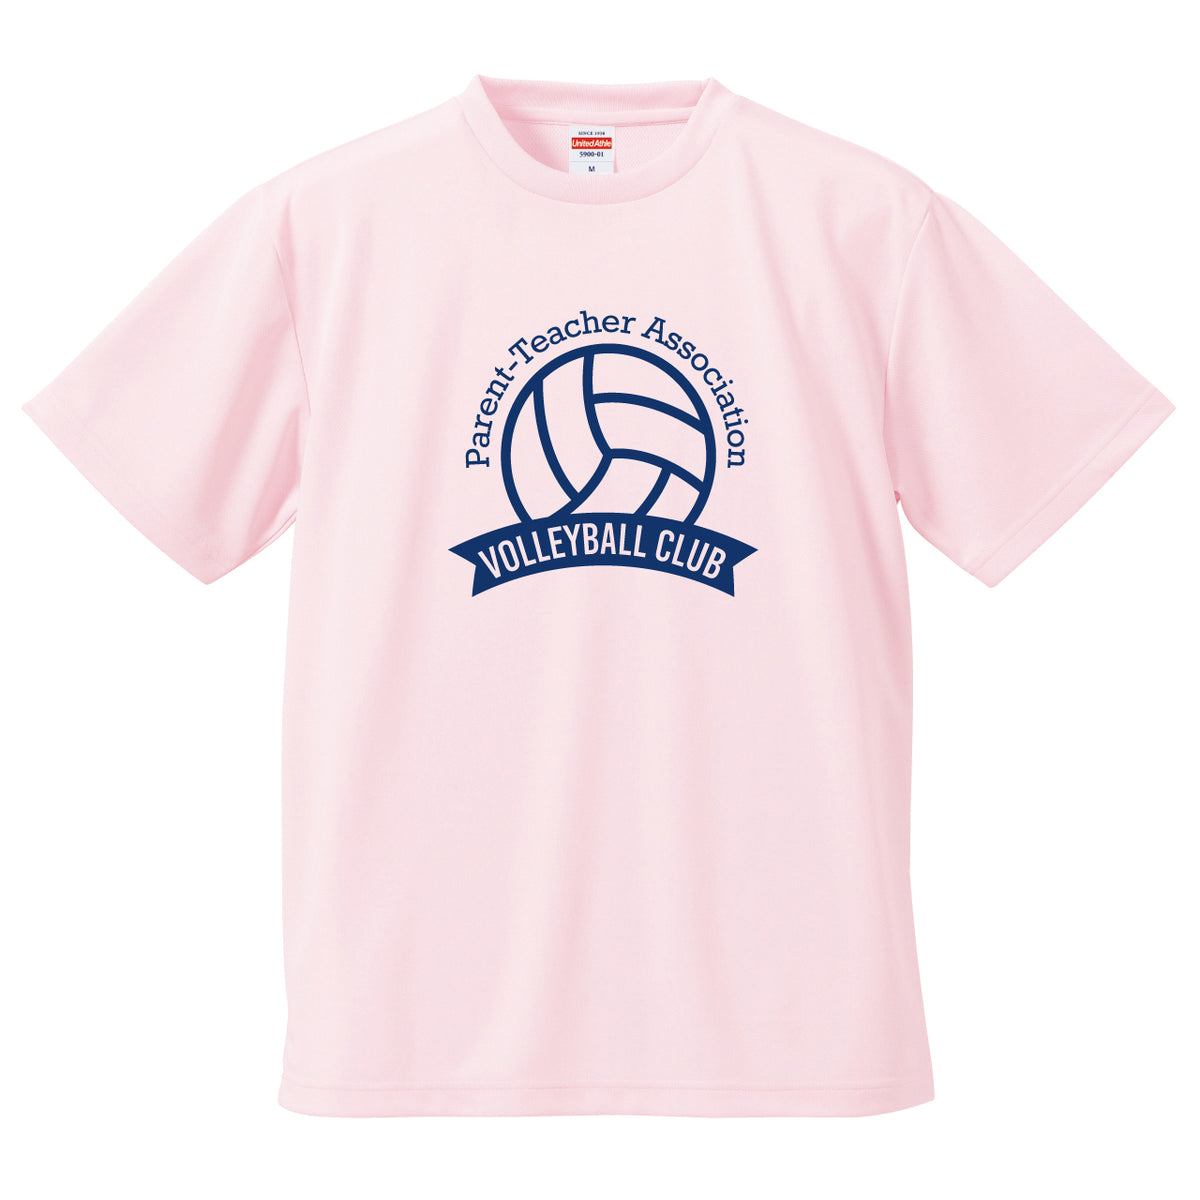 昭和大学 バレーボール部 バレーボールサークル 練習用Tシャツマダヤの出品物